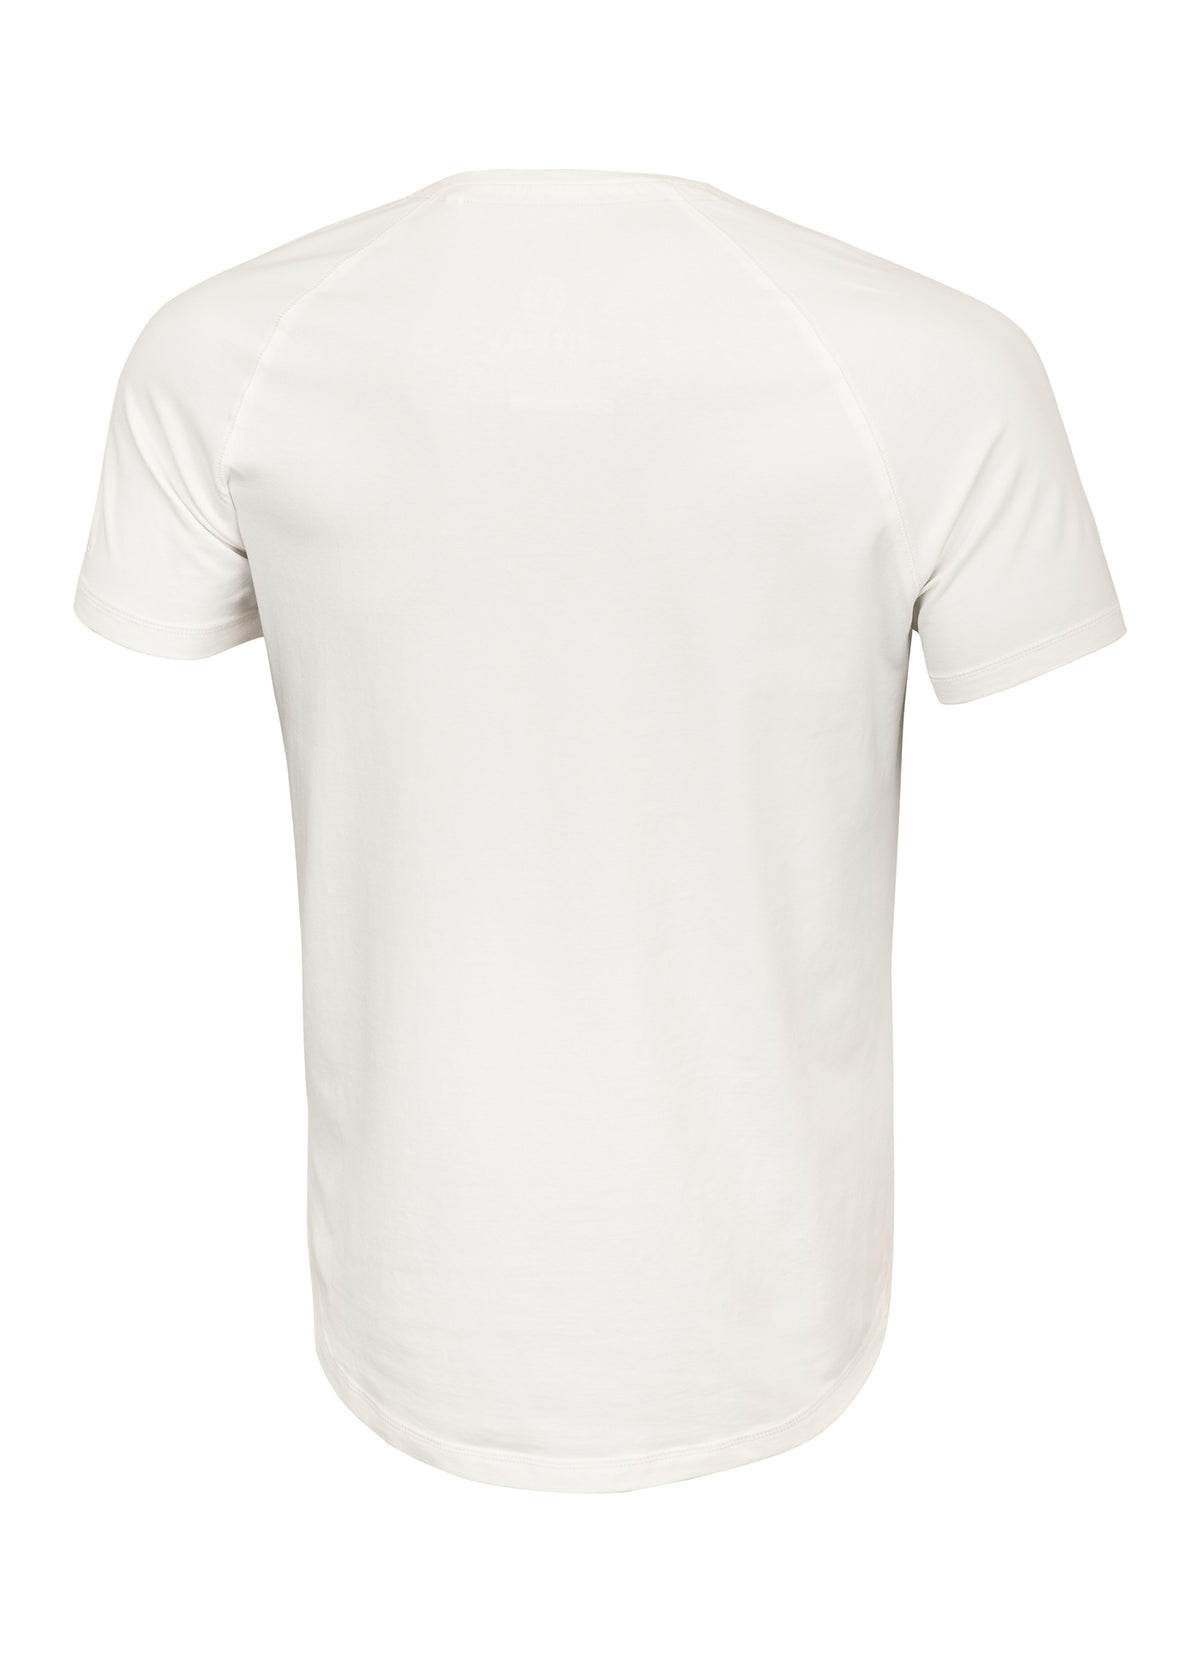 HILLTOP 210 Heavyweight Light Beige T-shirt - Pitbullstore.eu